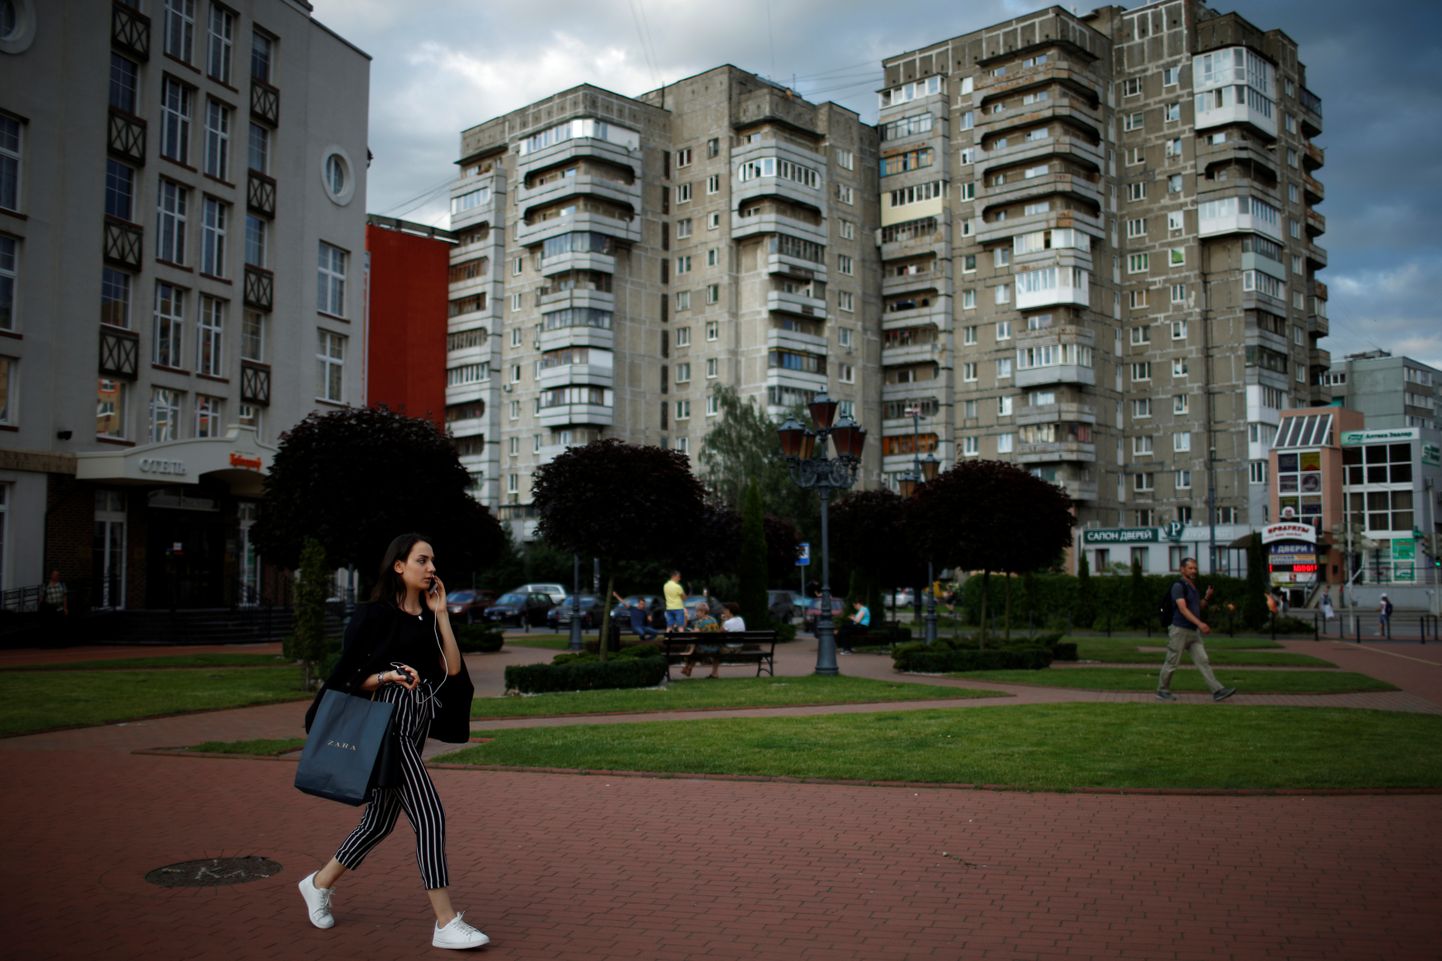 Inimesed kõnninvad Kaliningradi tänaval